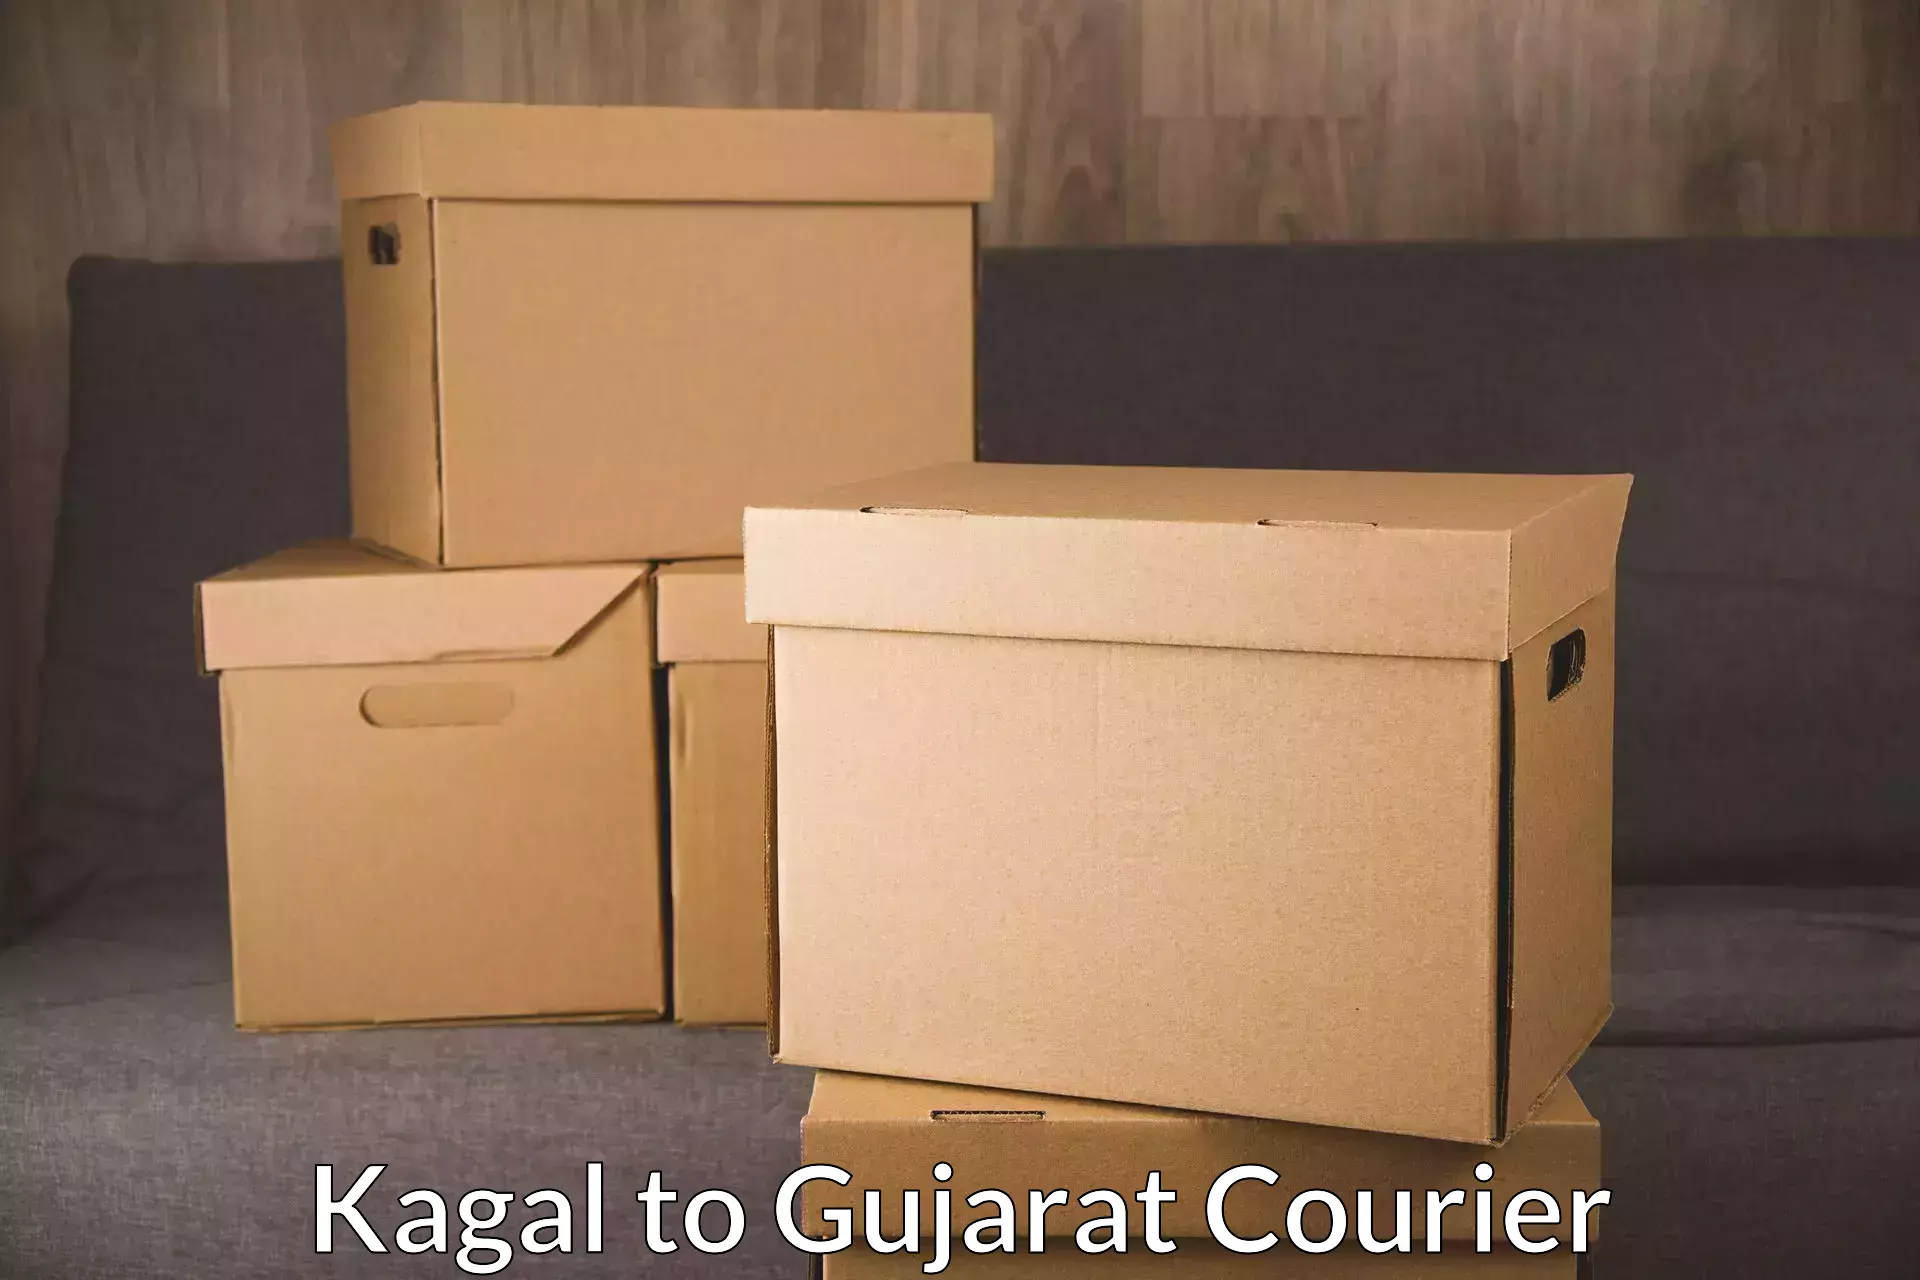 High-capacity shipping options Kagal to Gujarat